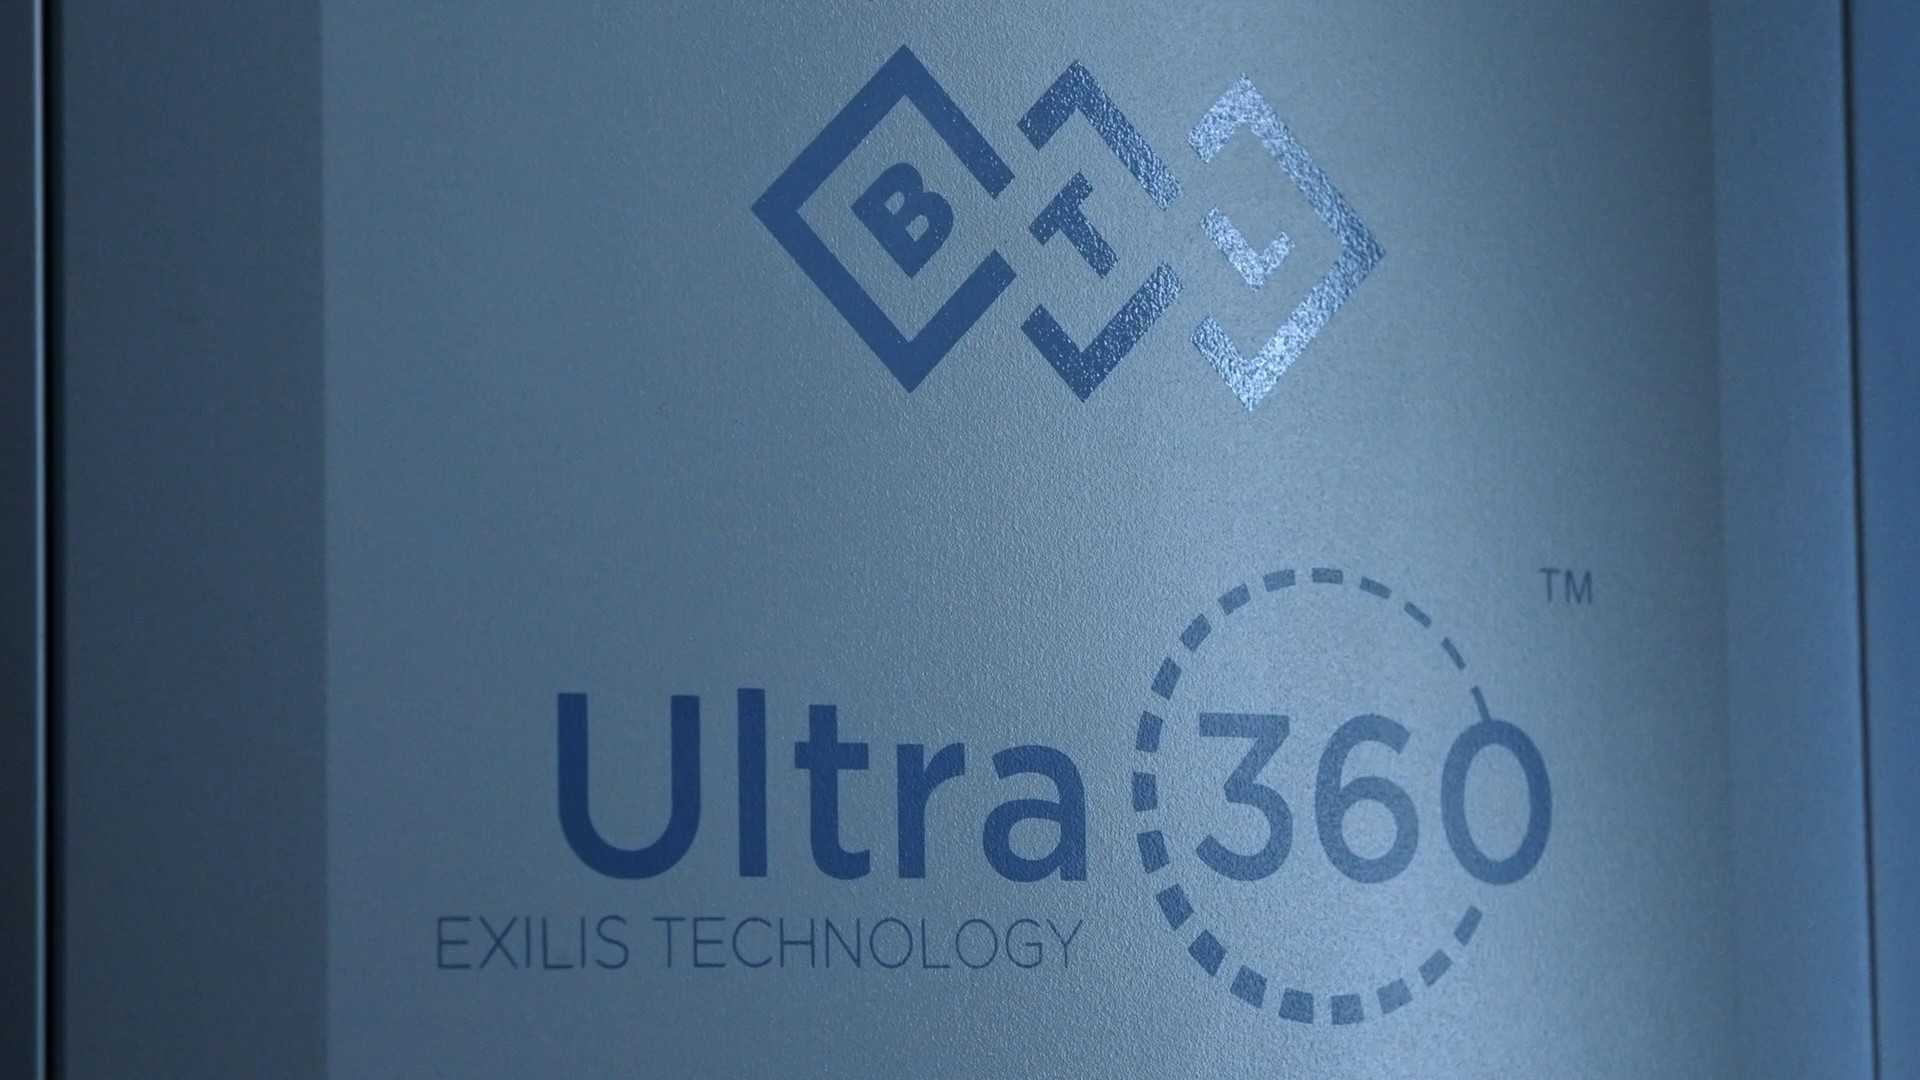 BTL Ultra 360 product video